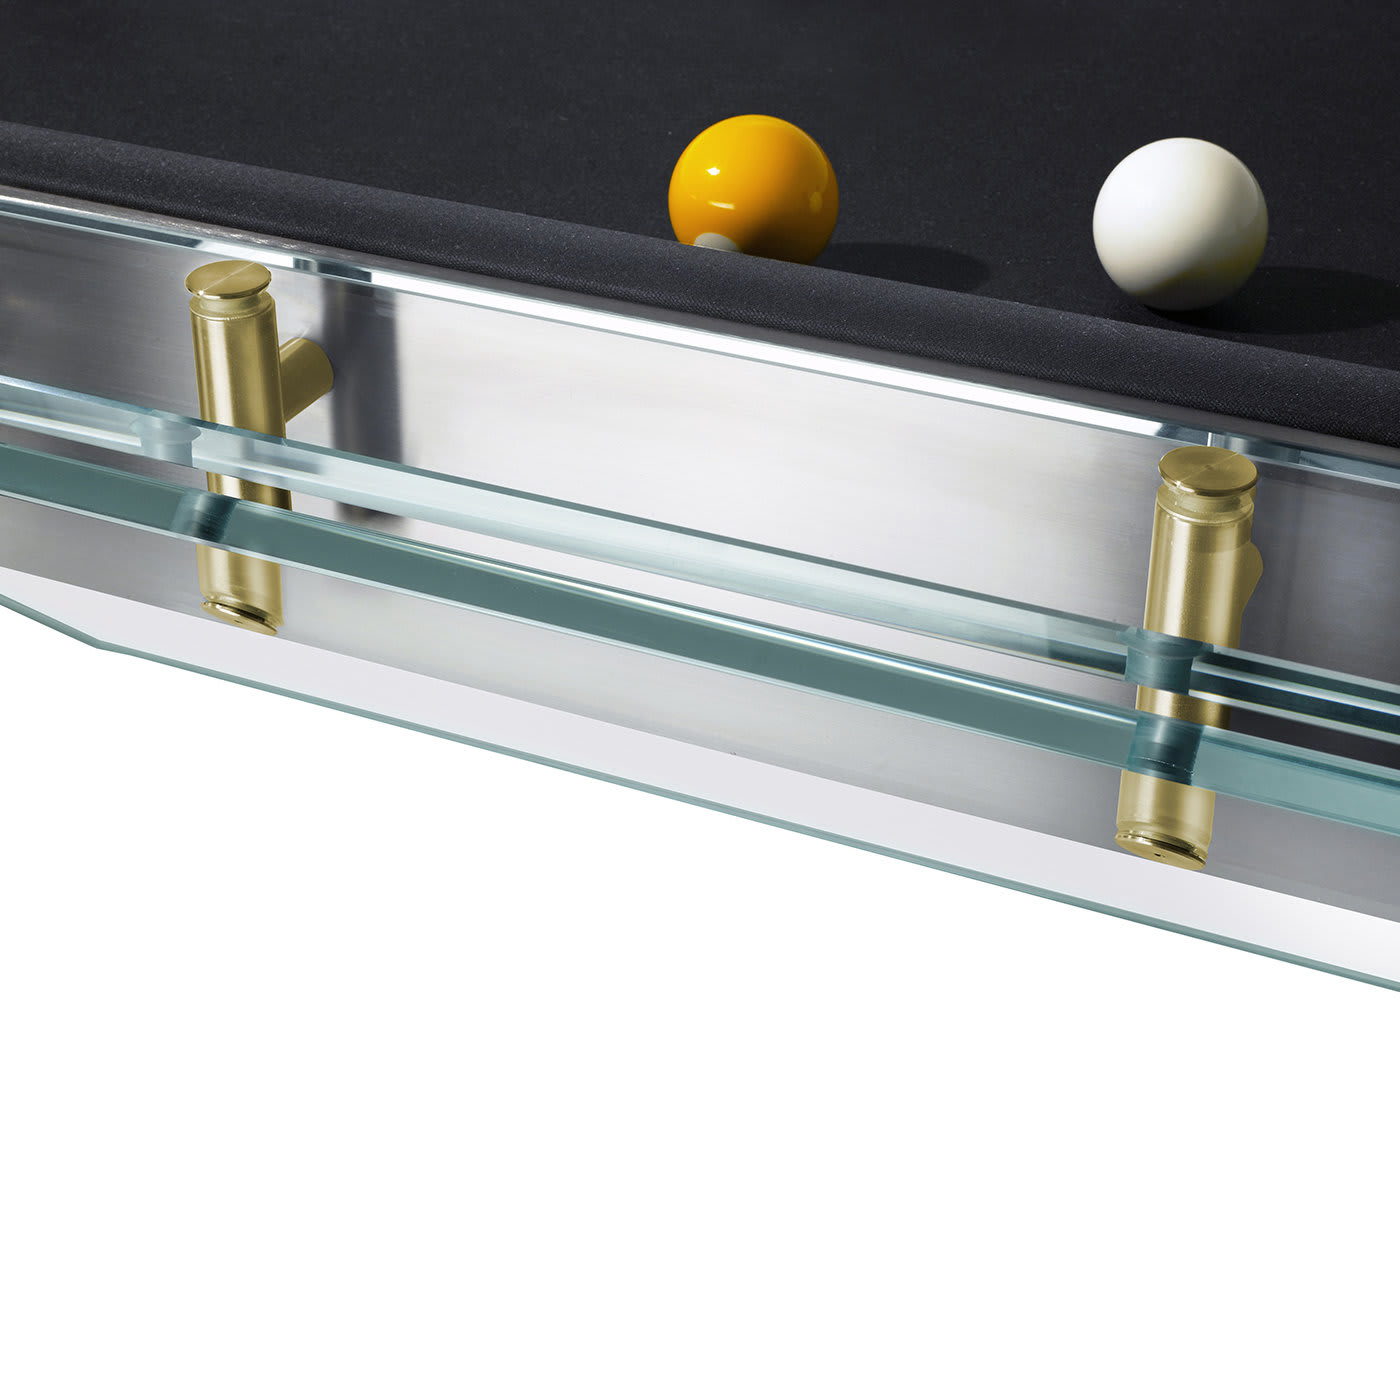 Filotto Billiard Table - Golden Edition - Impatia